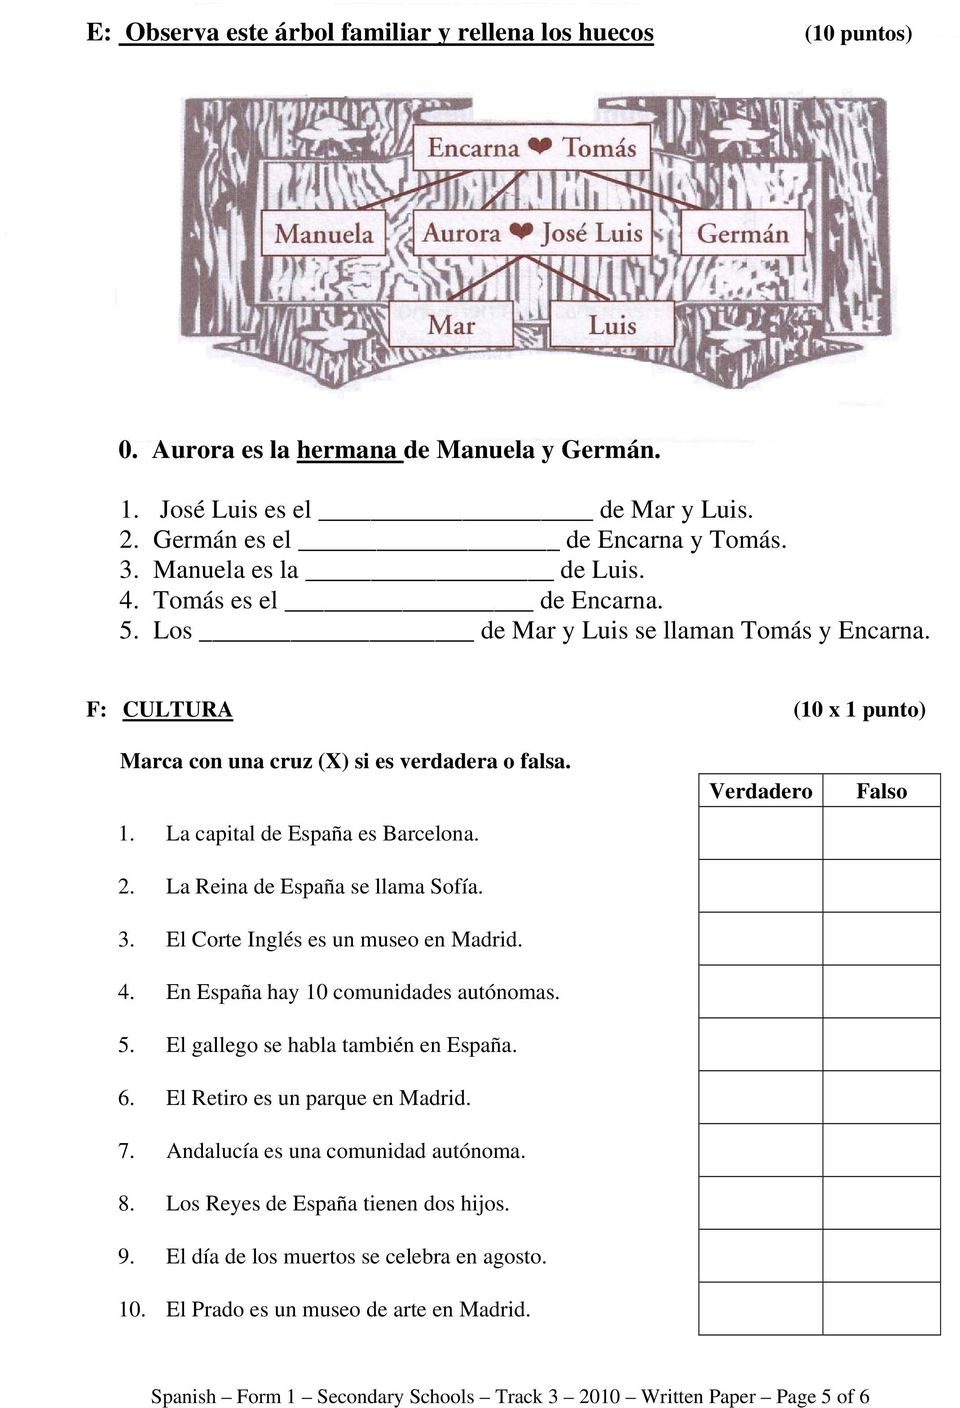 2. La Reina de España se llama Sofía. 3. El Corte Inglés es un museo en Madrid. 4. En España hay 10 comunidades autónomas. 5. El gallego se habla también en España. 6.